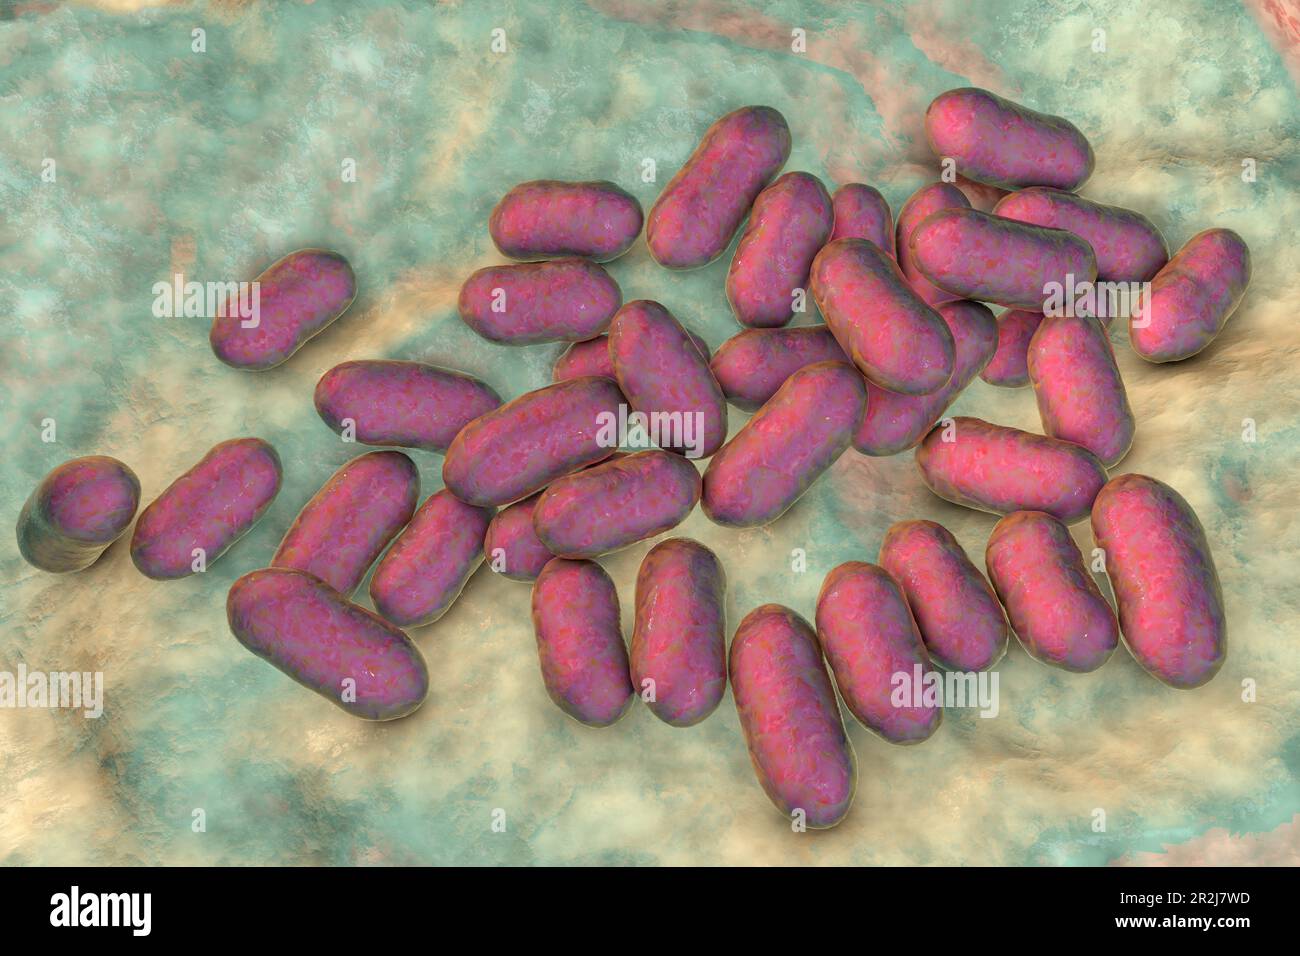 Prevotella bacteria, illustration Stock Photo